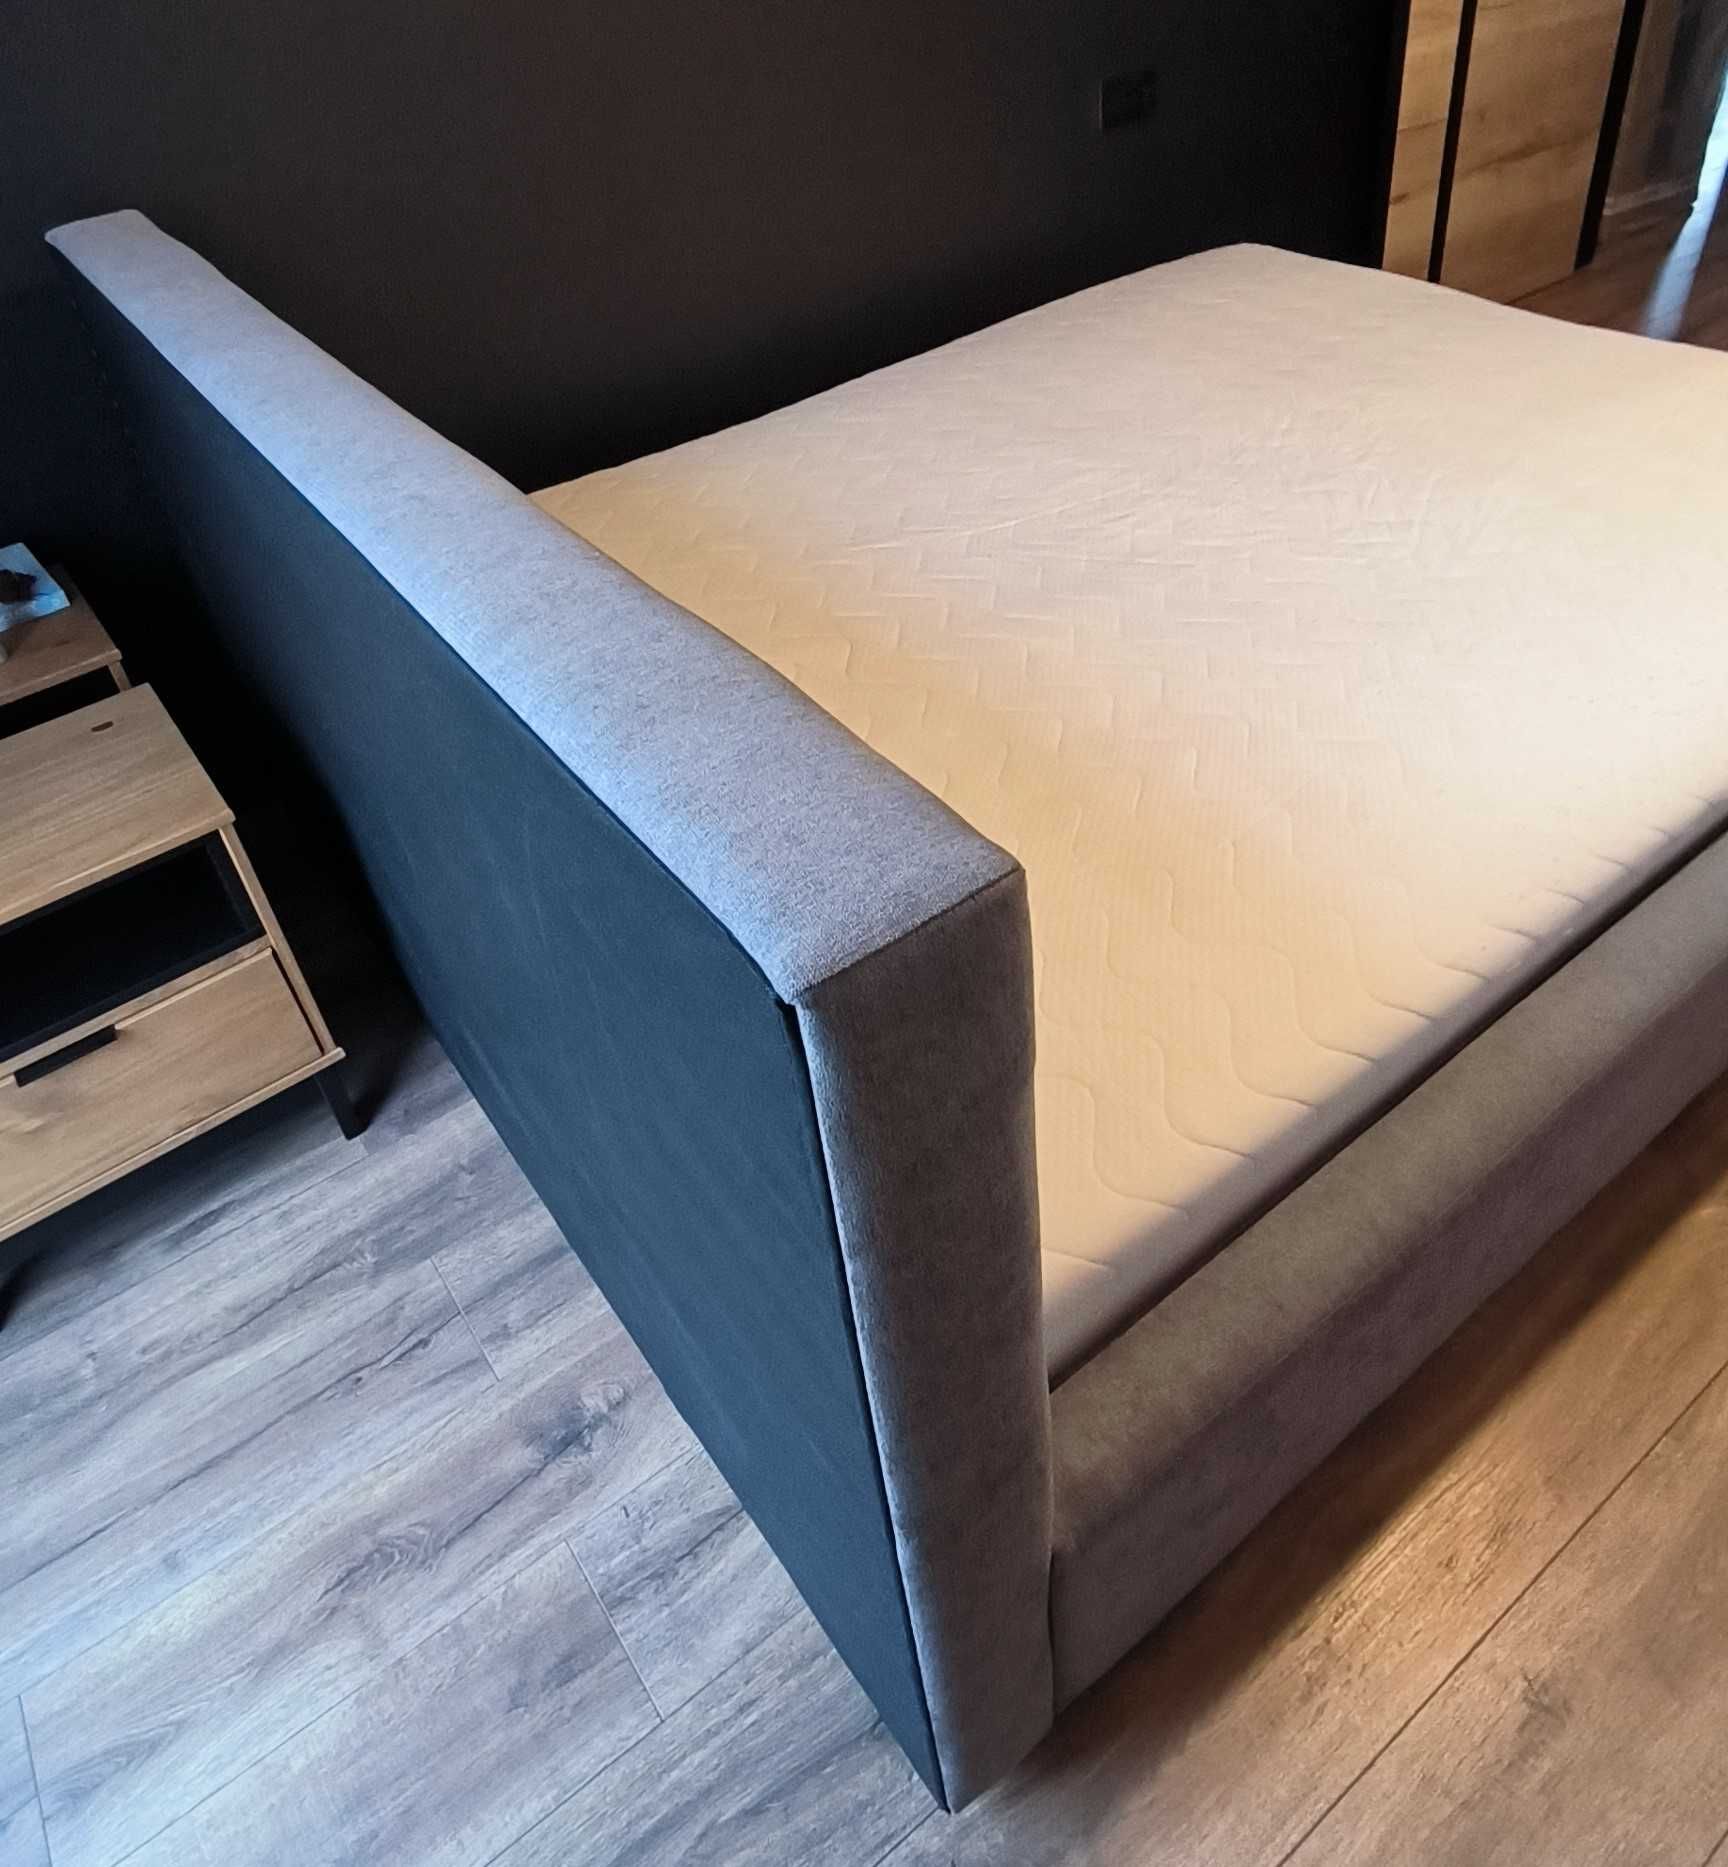 Łóżko z materacem 160x200, szare, stelaż drewniany.